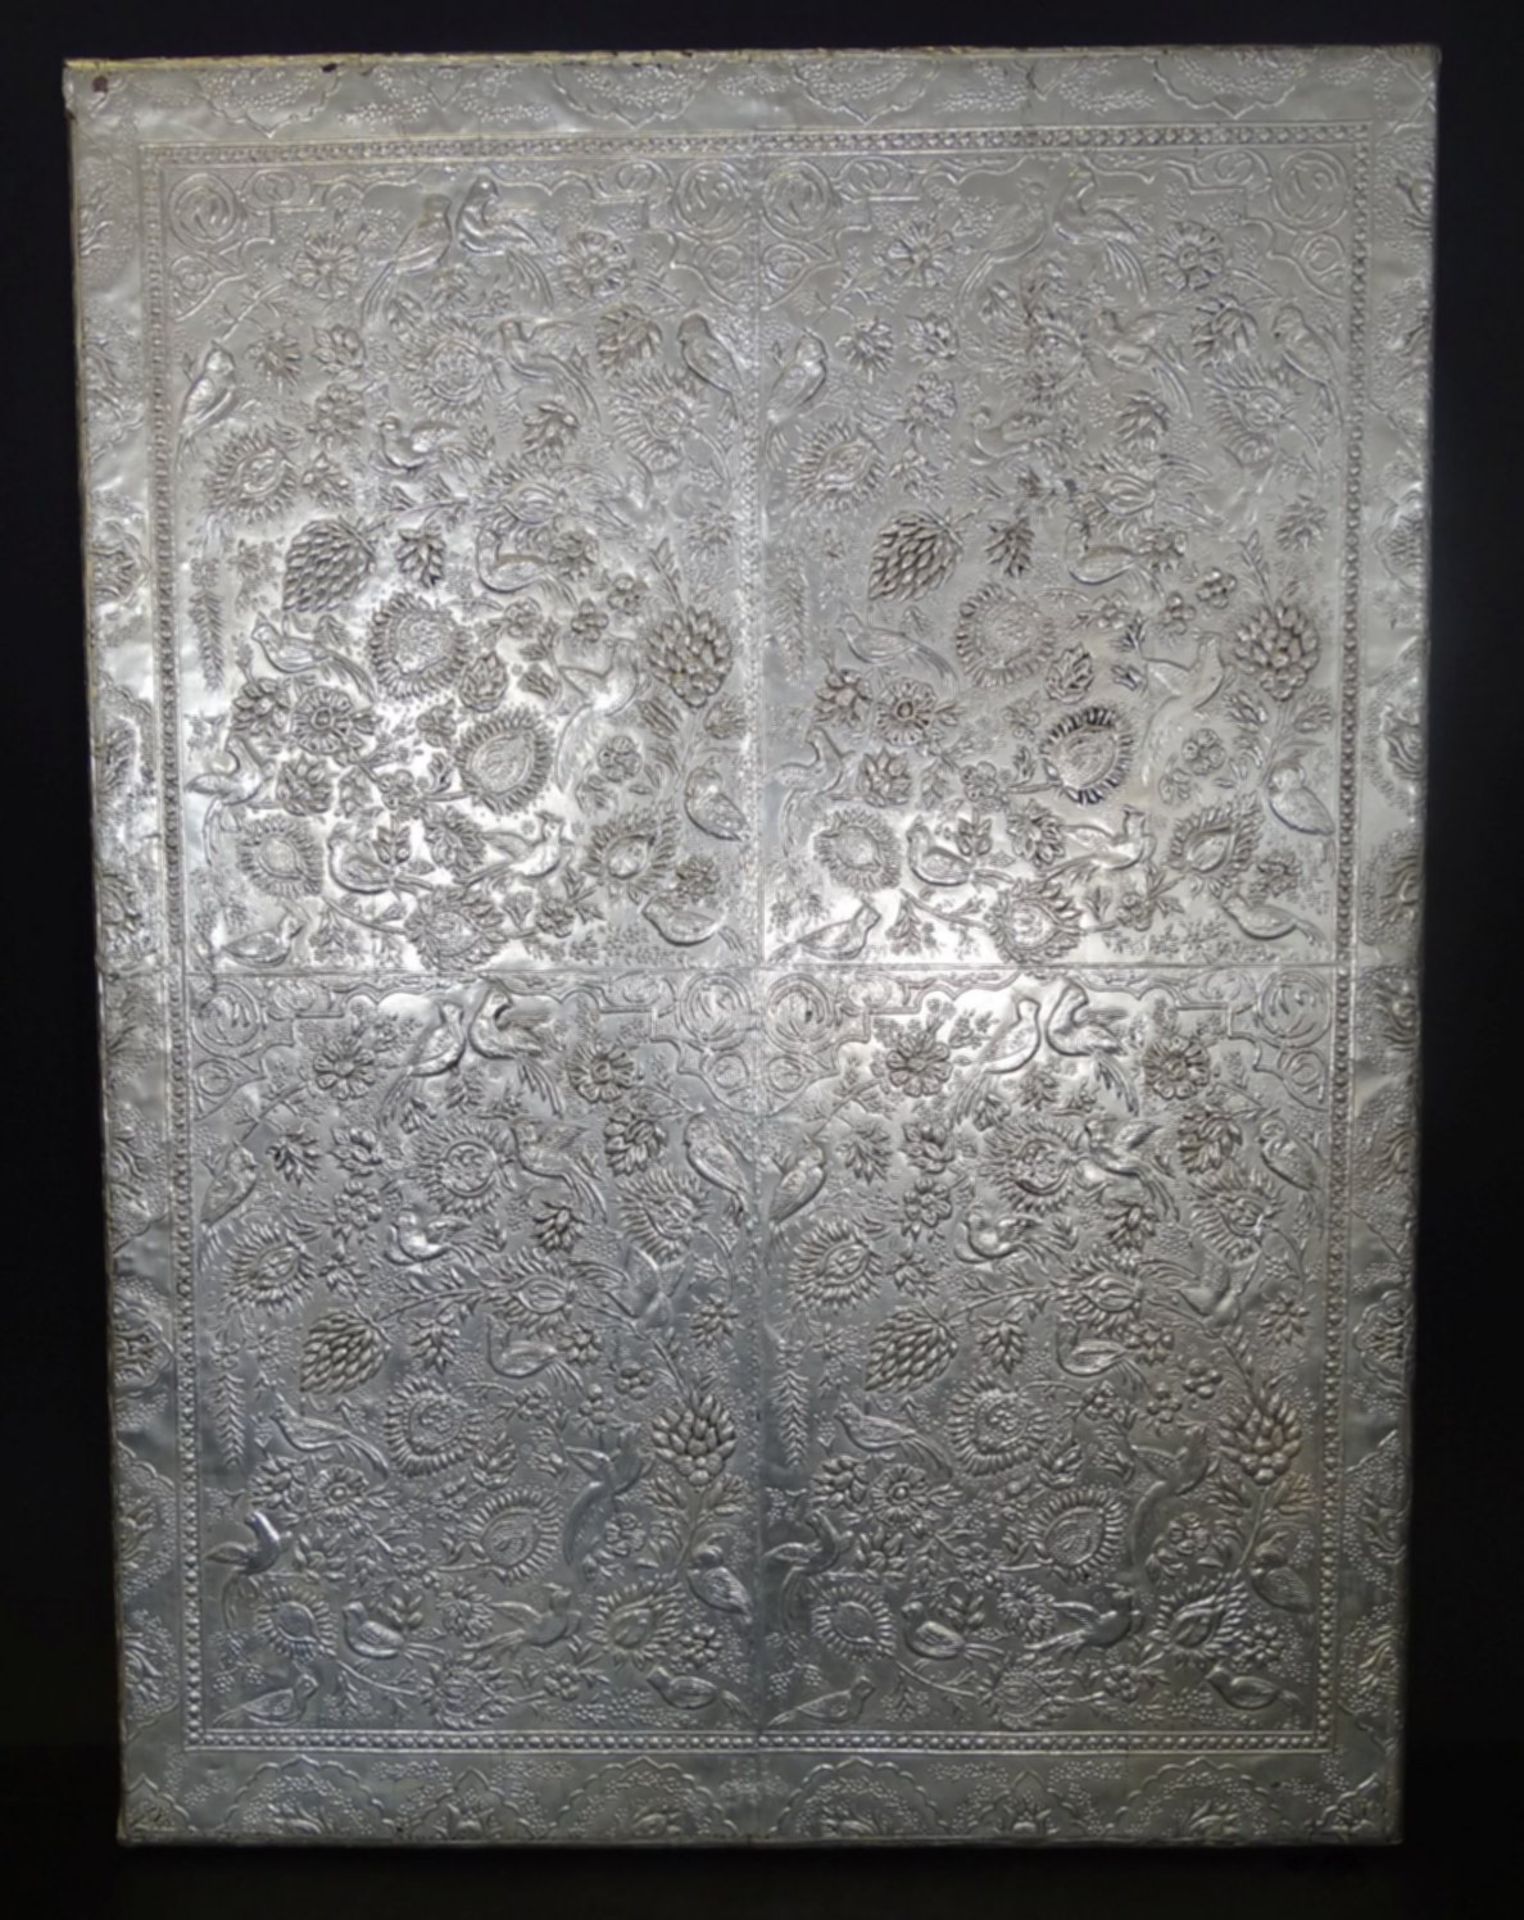 Wandspiegel, geprägtes Silber mit emaillierten Feldern, diese arabisch beschriftet, leichte - Bild 6 aus 10